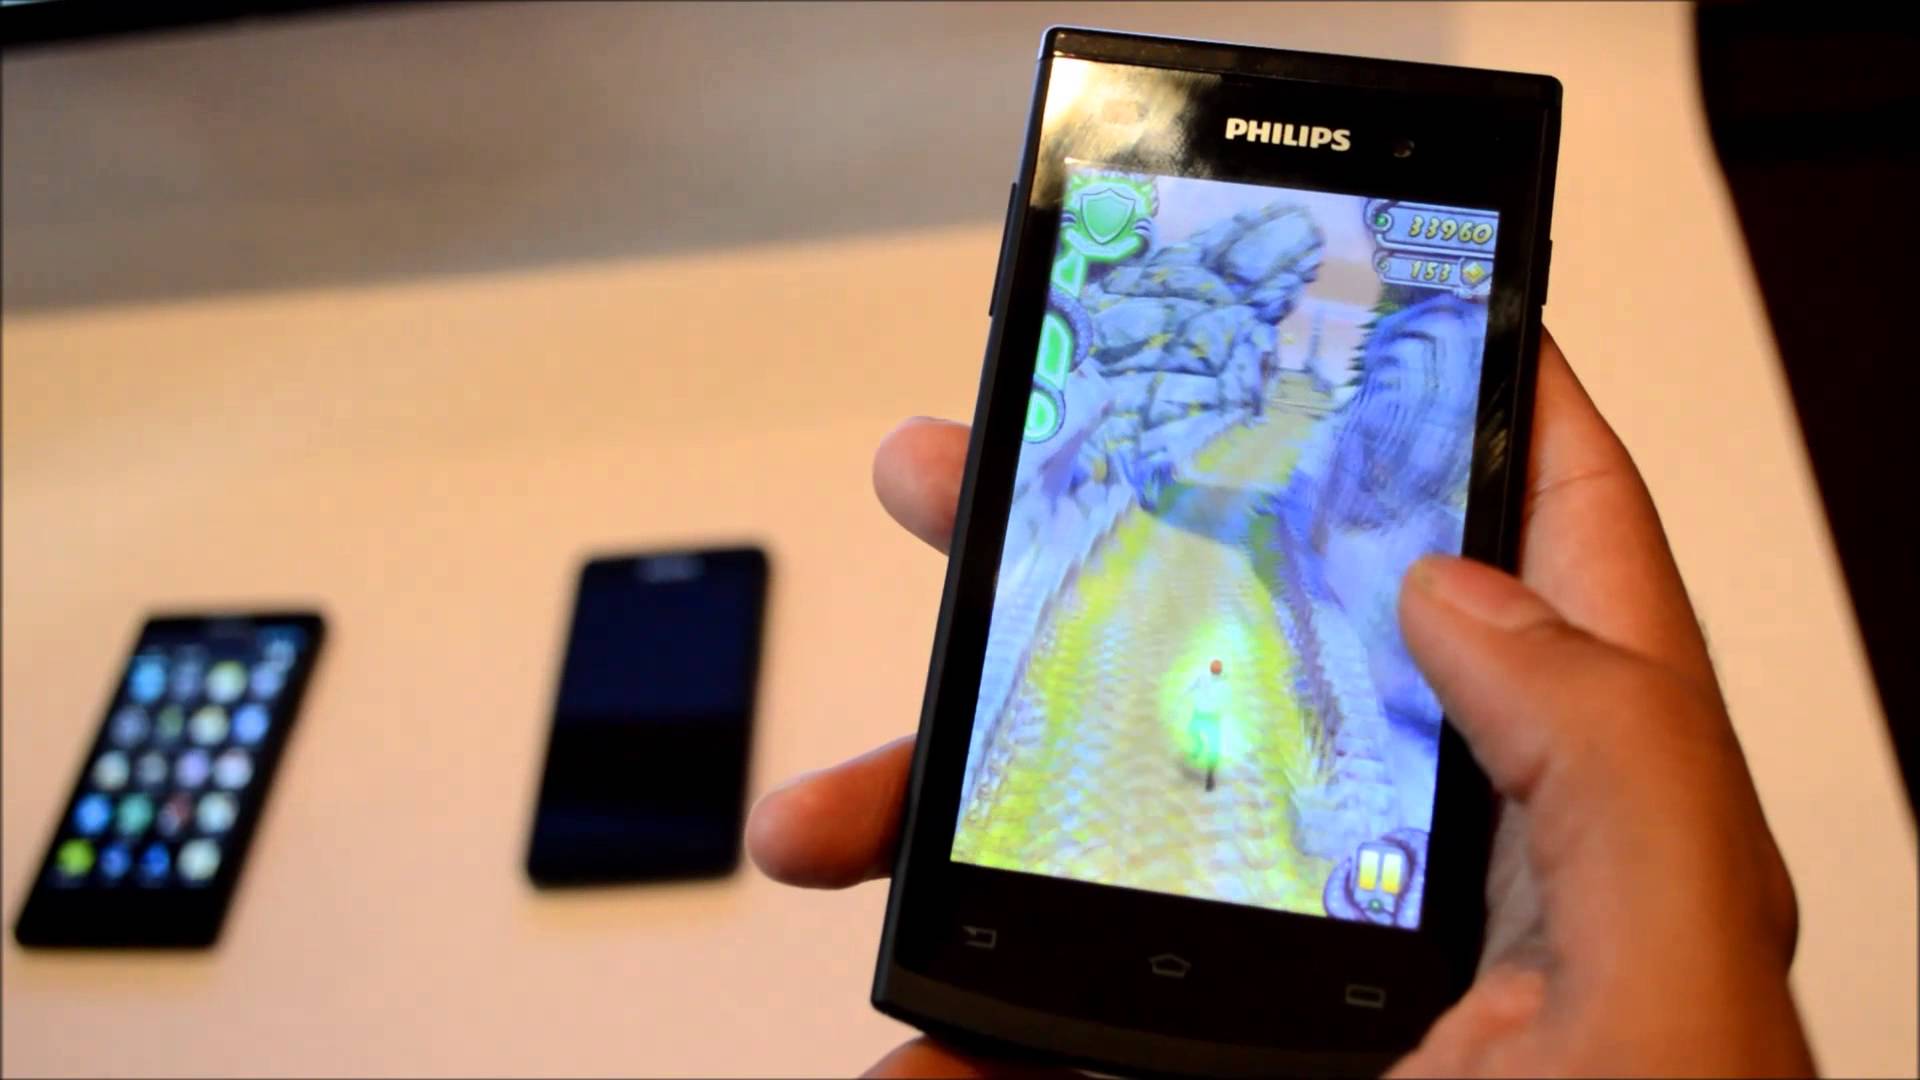 Philips S308 là model được bán với giá hấp dẫn nhất khi mua smartphone giá rẻ dưới 4 triệu